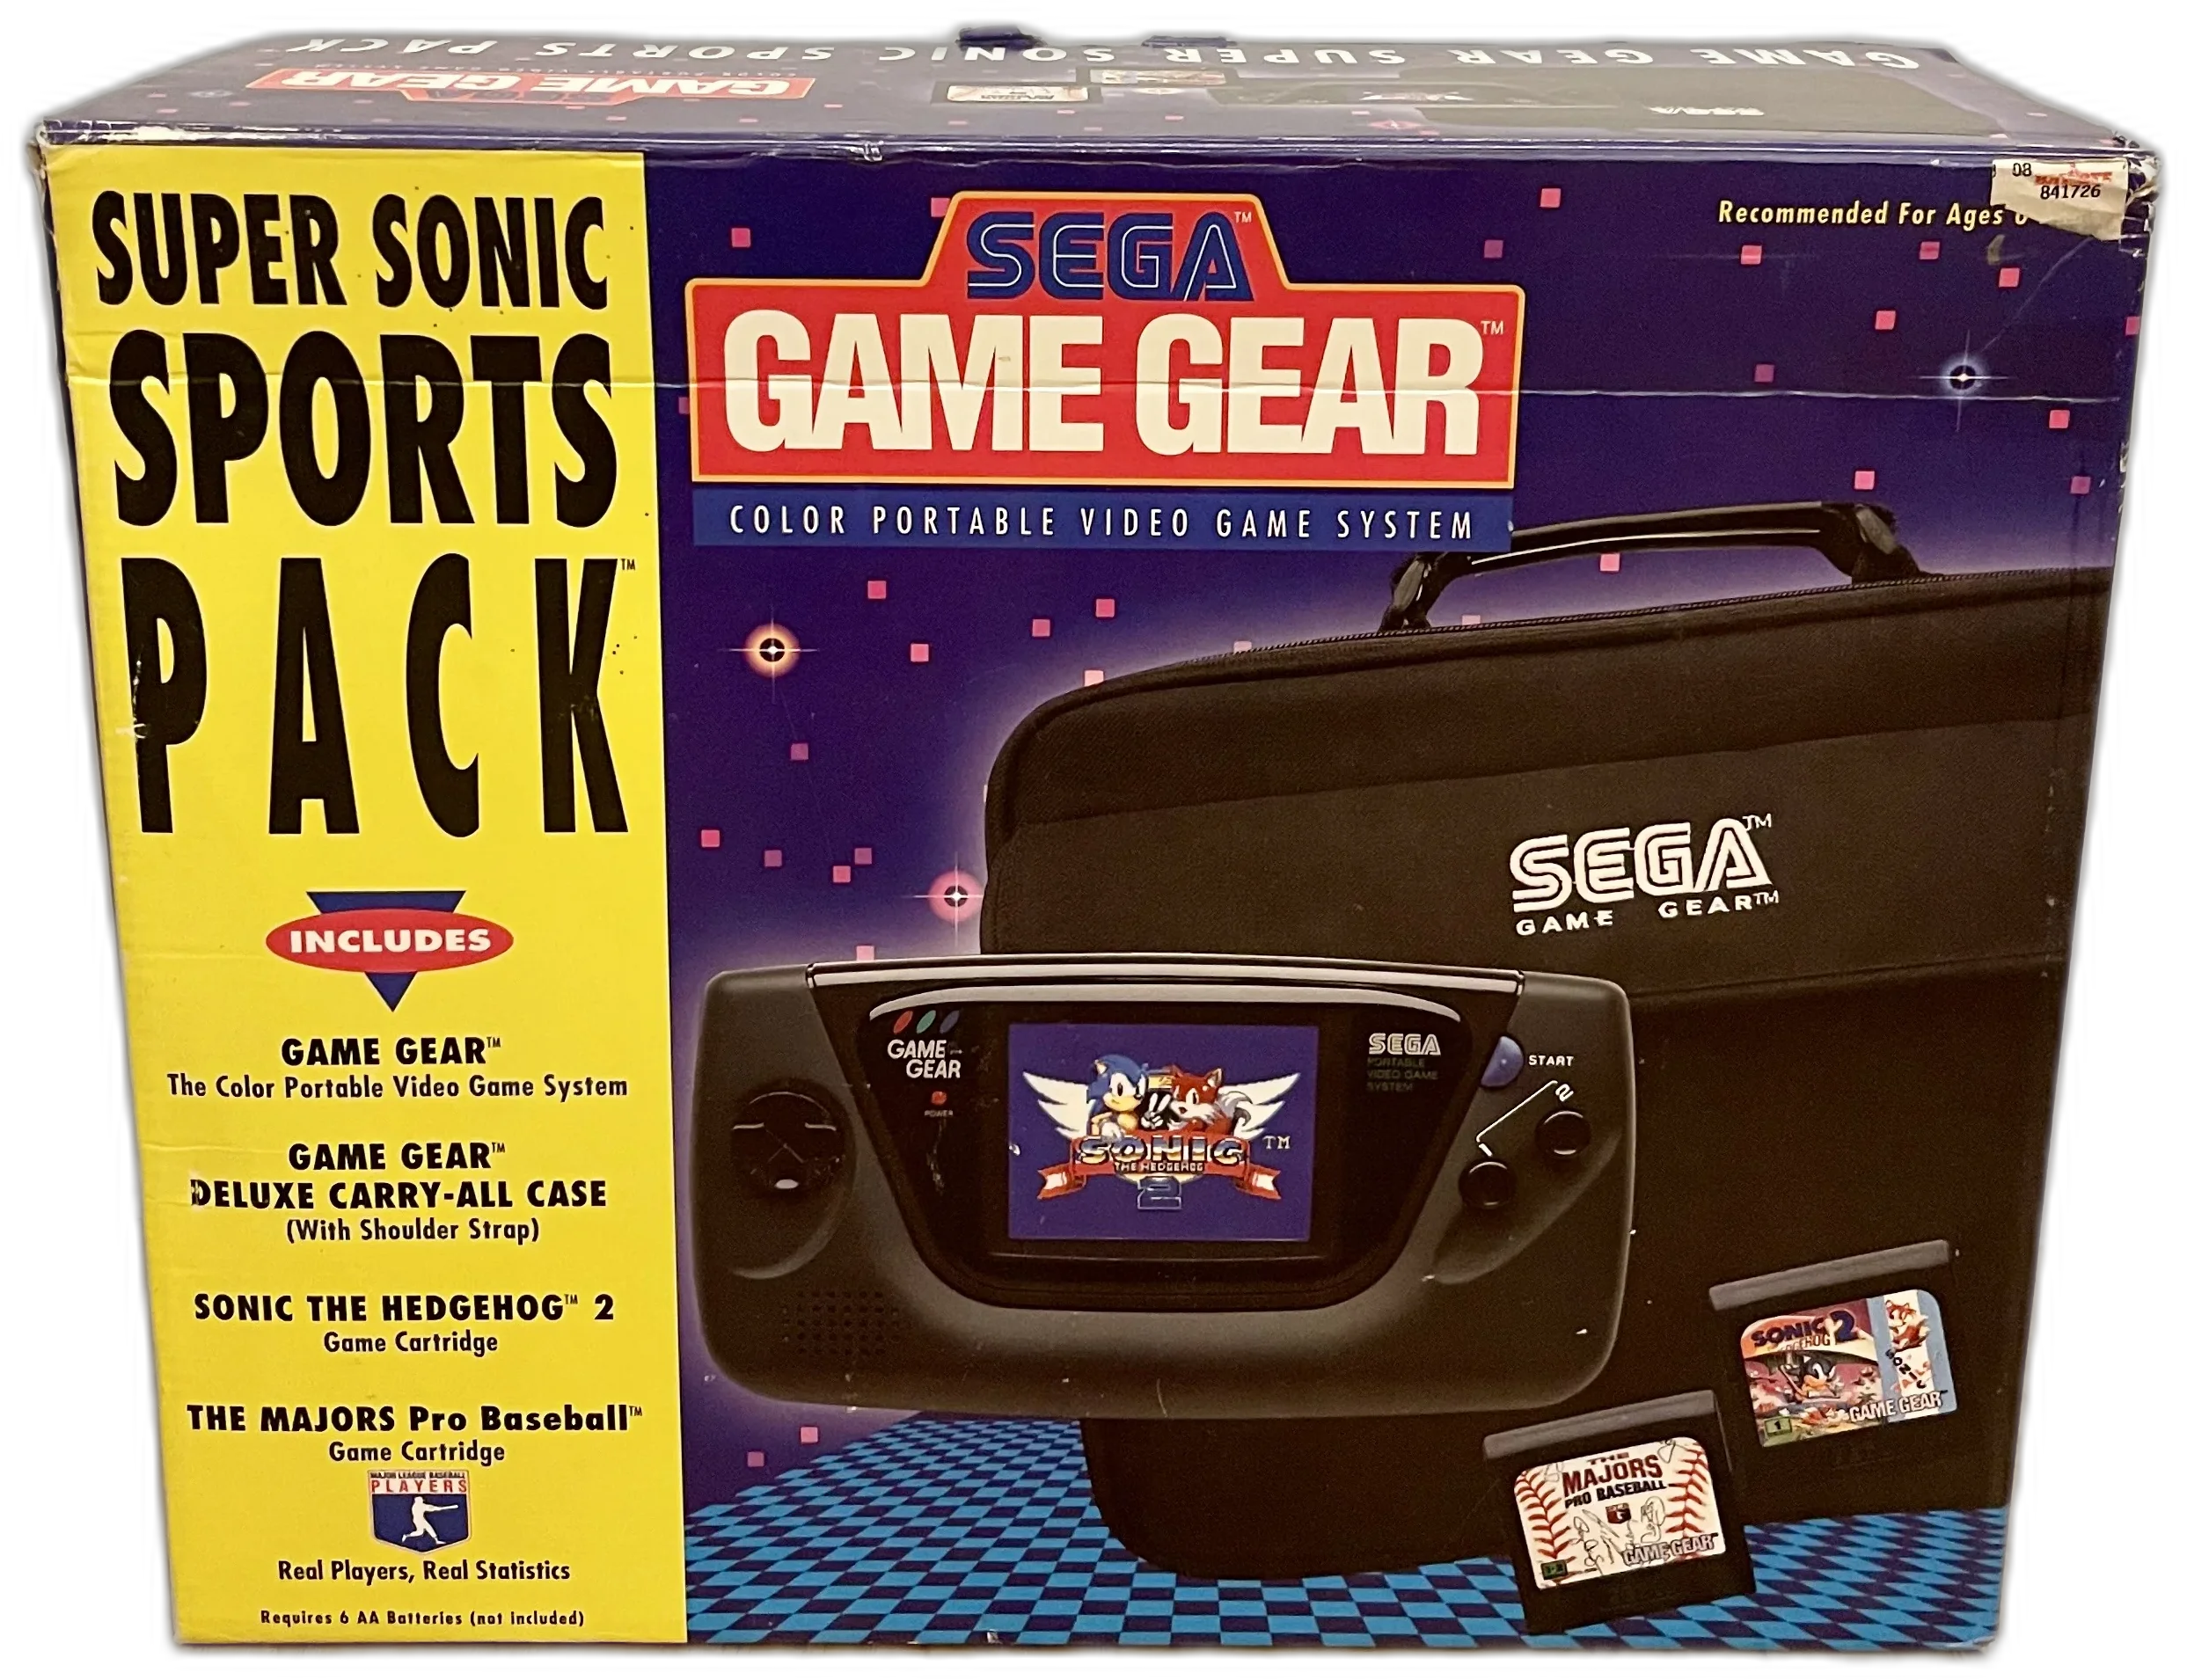  Sega Game Gear Super Sonic Sports Pack